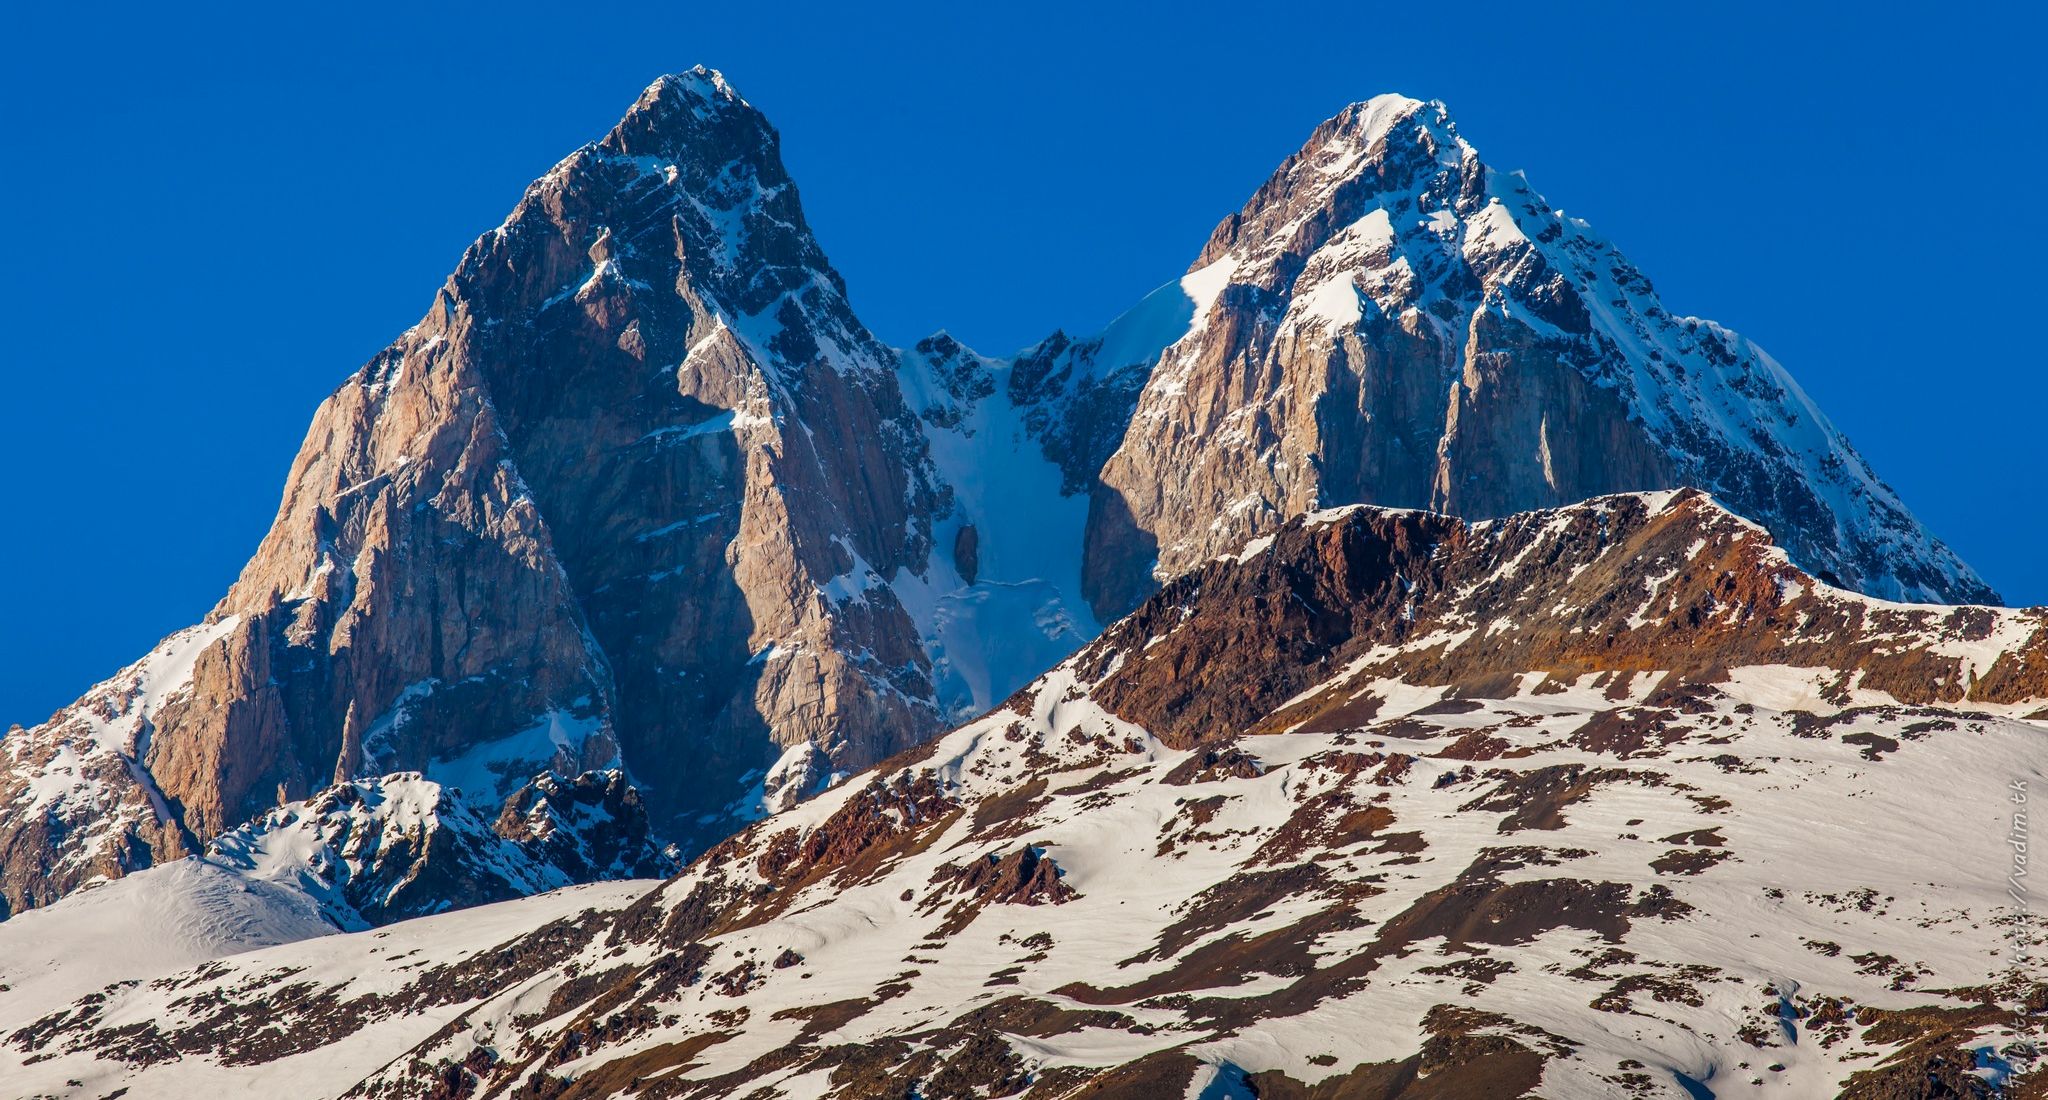 Mount Ushba in the Caucasus